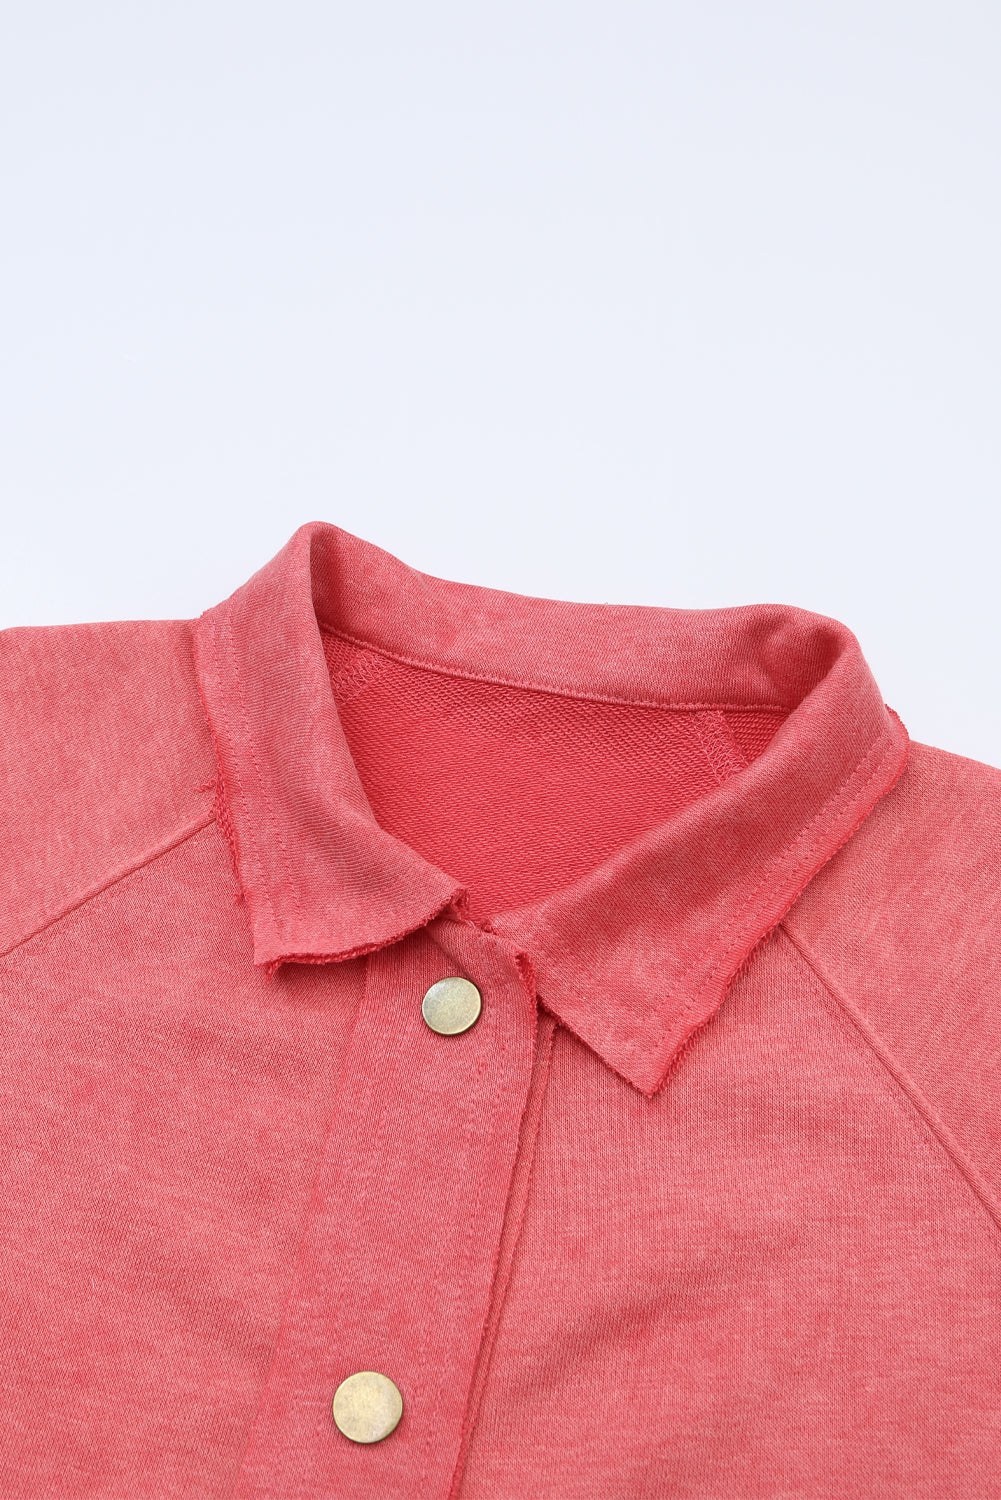 Ognjeno rdeča vintage izprana majica z žepnimi gumbi